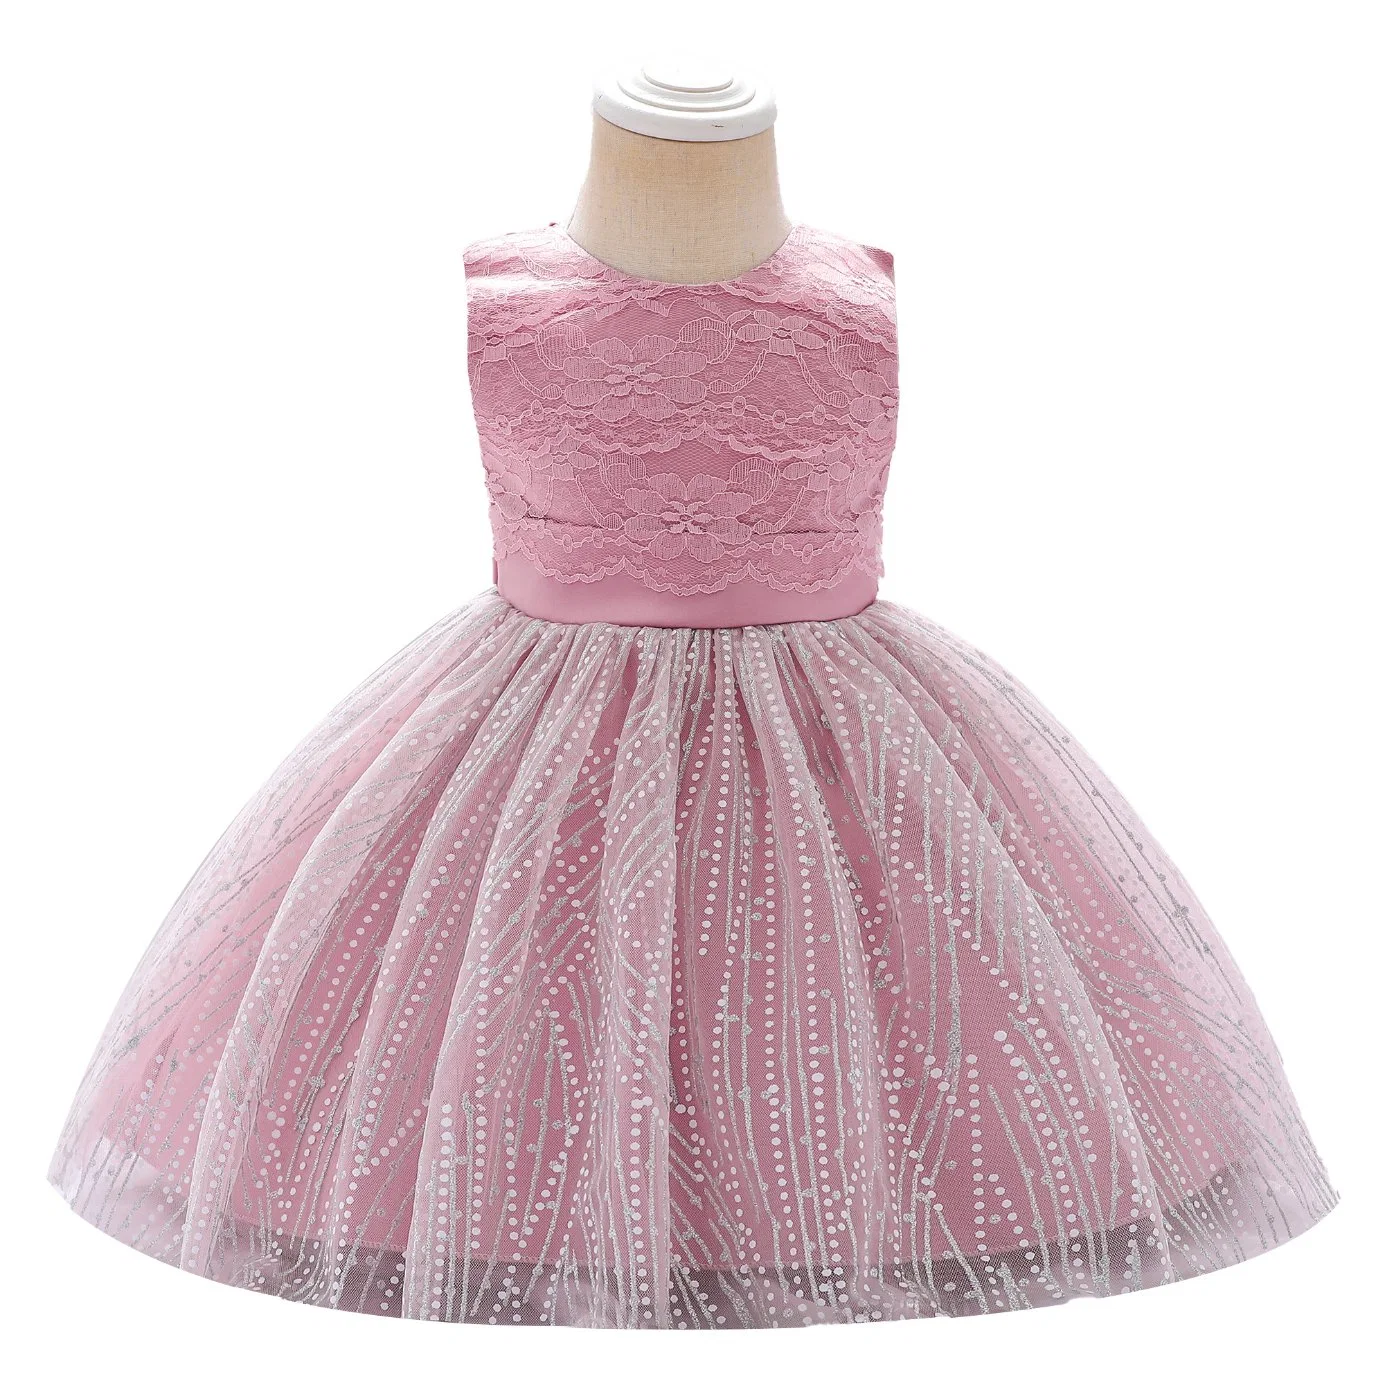 Children's Apparel Baby Wear Girls Party Garment Fluffy Ball Gown Princess Frock Kids Sweet Dress